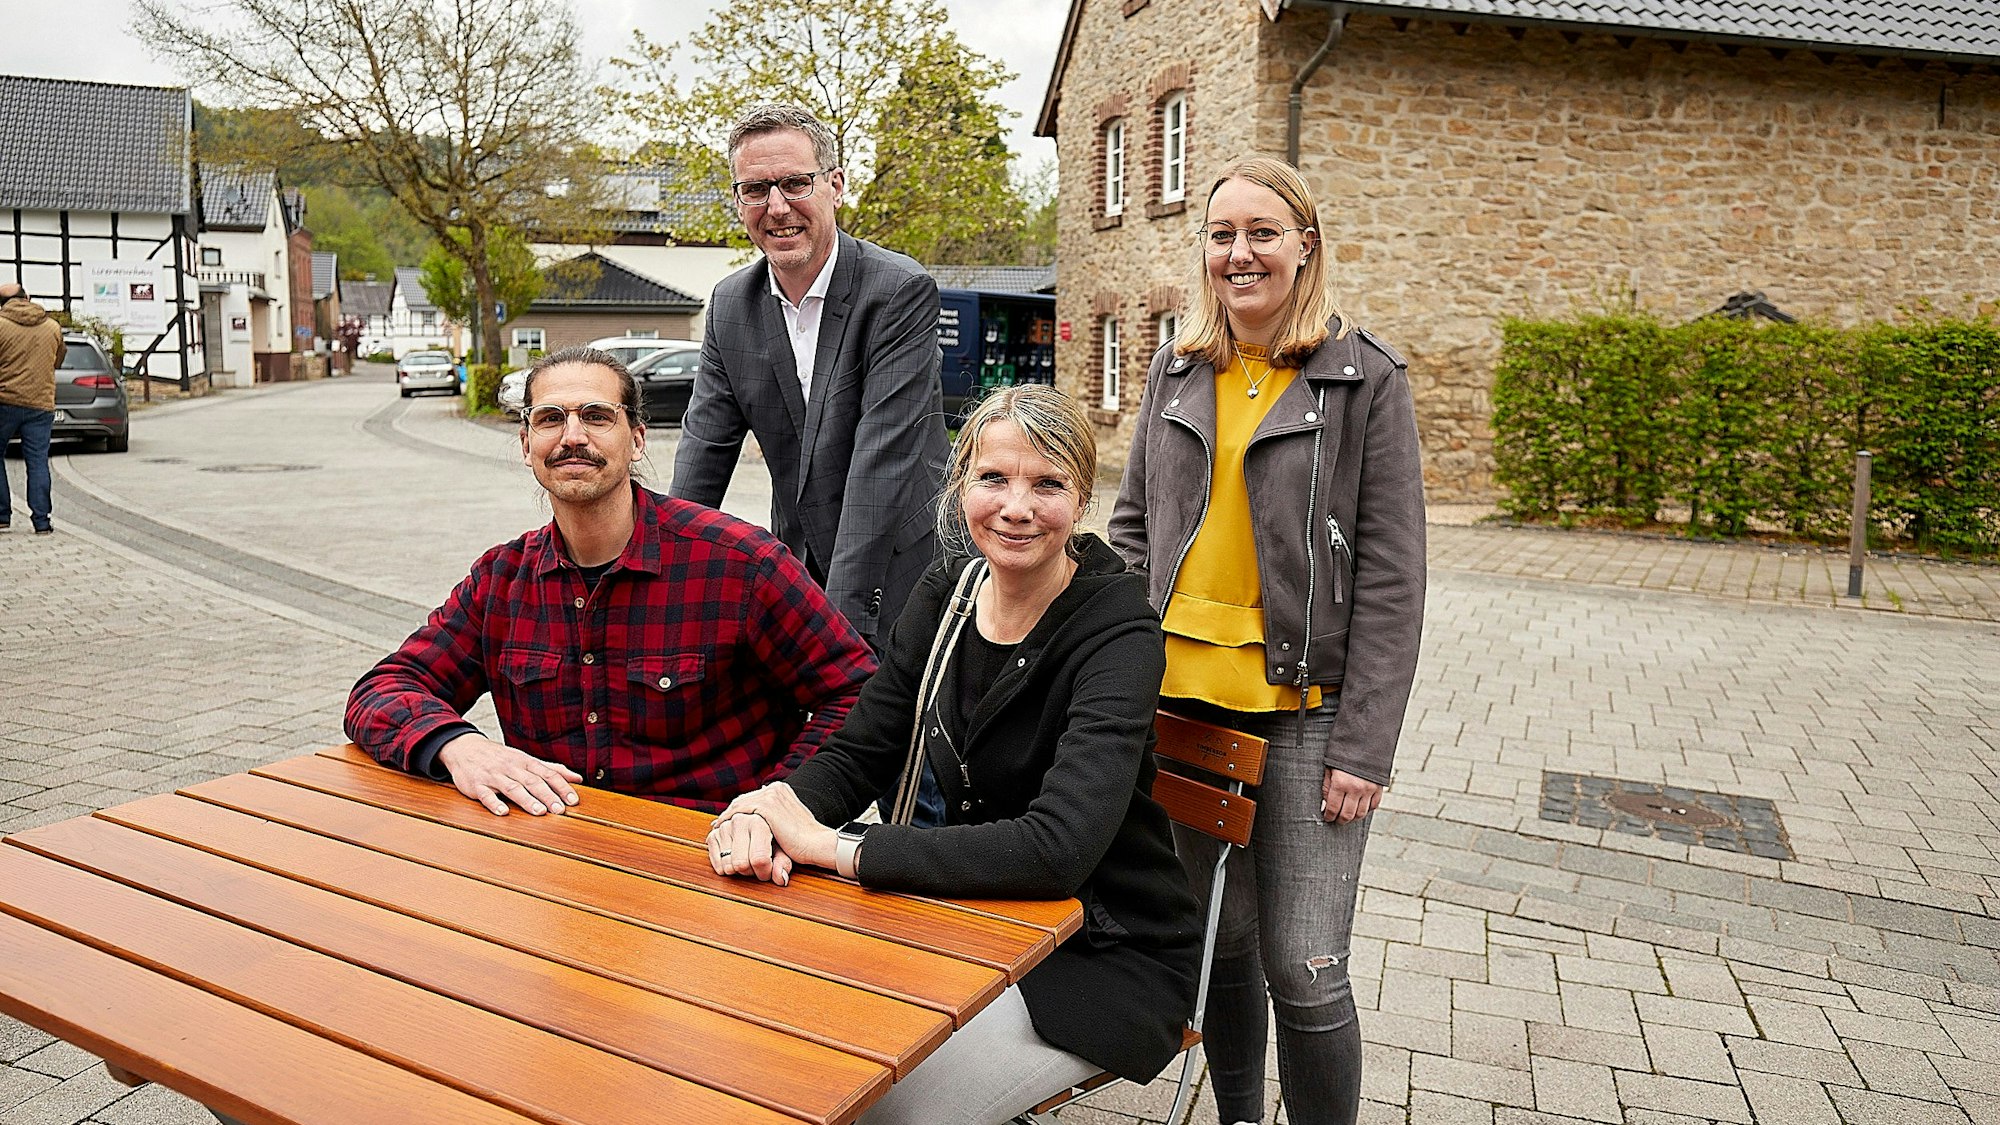 Einen Coworkingspace für Nettersheim planen von links Marc Osenberg, Norbert Crump, Vanessa Woch und Lea Blindert.